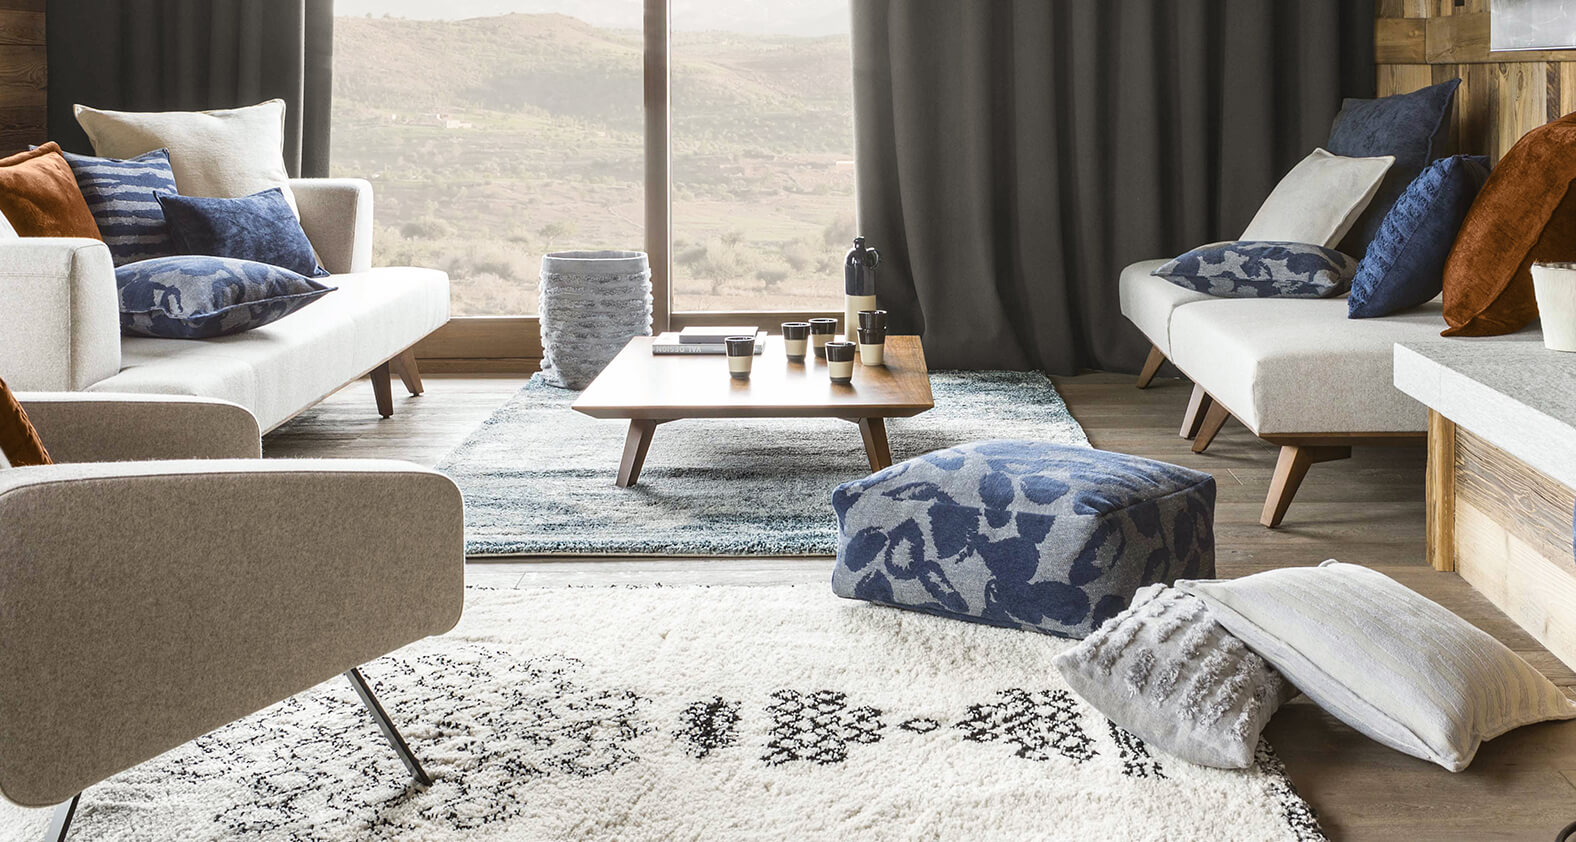 Modernes Wohnzimmer mit schwarz-weiem Berber-Teppich